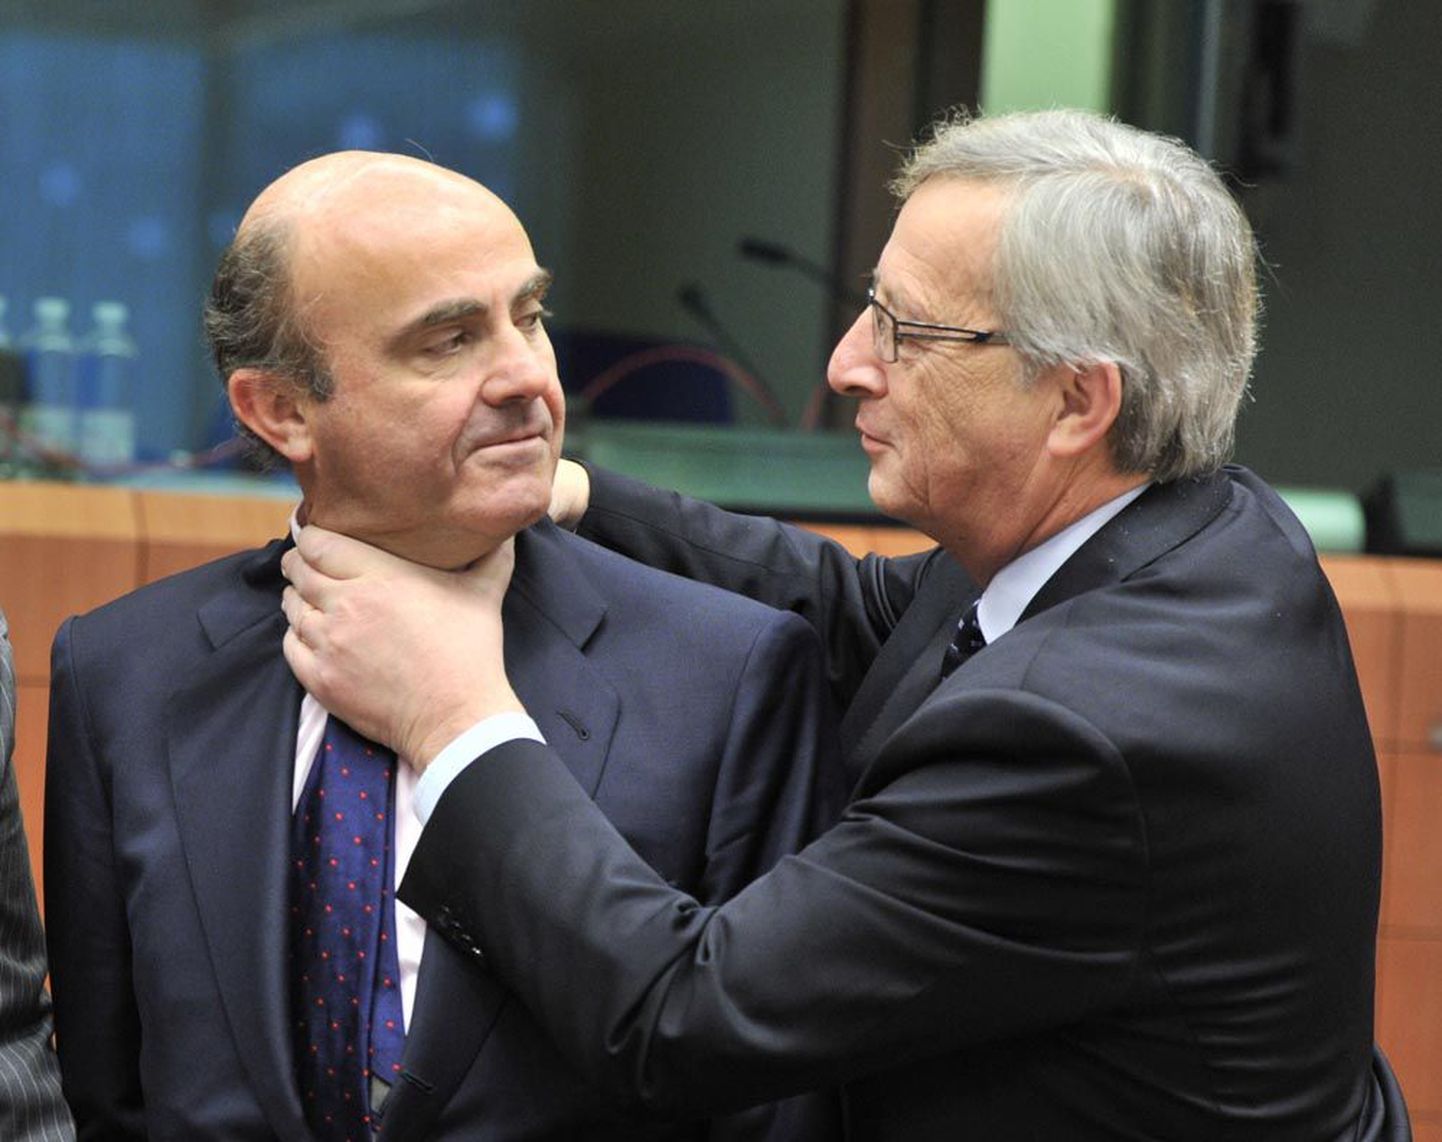 Hispaania rahandusminister Luis de Guindos (vasakul) ja eurogrupi juht Jean-Claude Juncker enne eurotsooni rahandusministrite kohtumist. Pärast esialgset sõbralikku kallistust näitas Juncker piltlikult, et Hispaania on täbaras seisus.